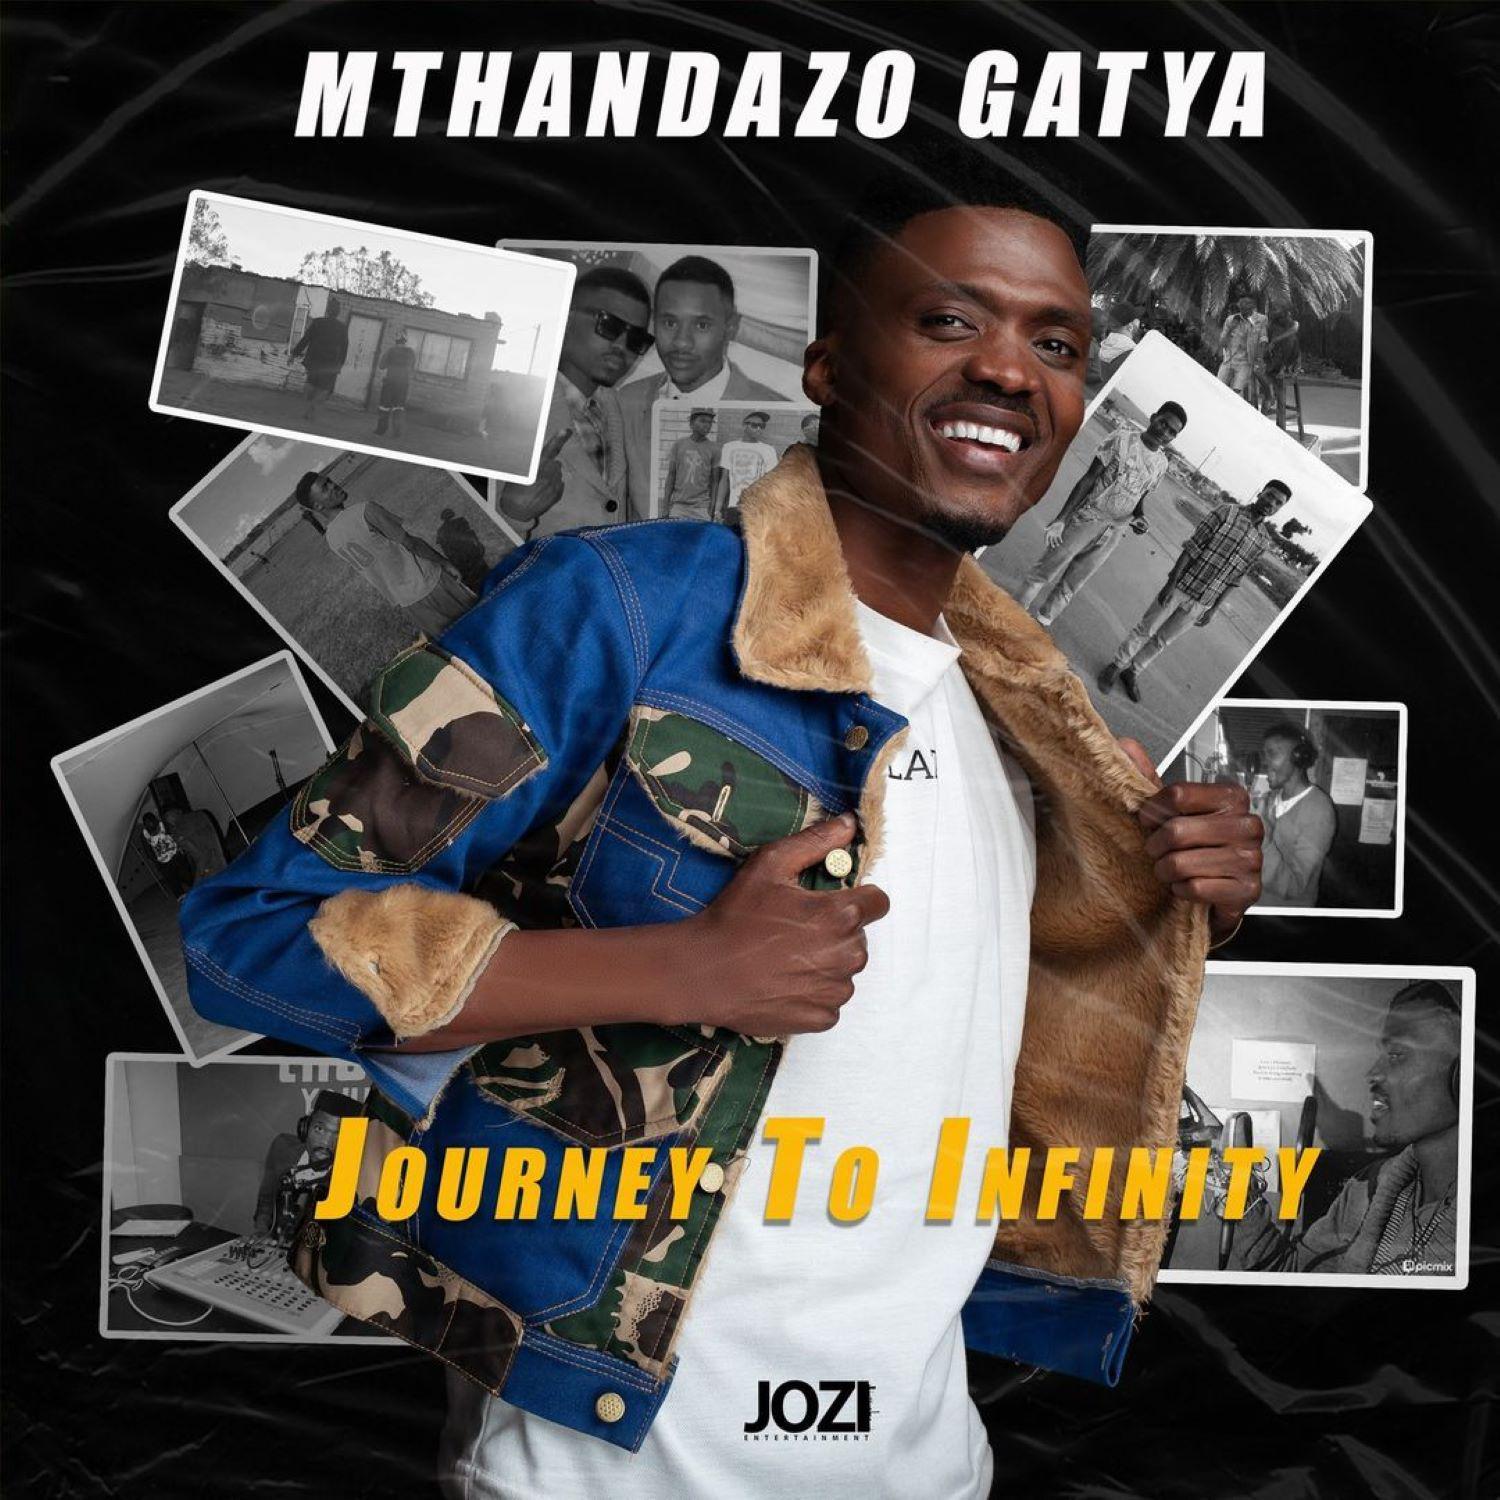 Mthandazo Gatya - wont give up